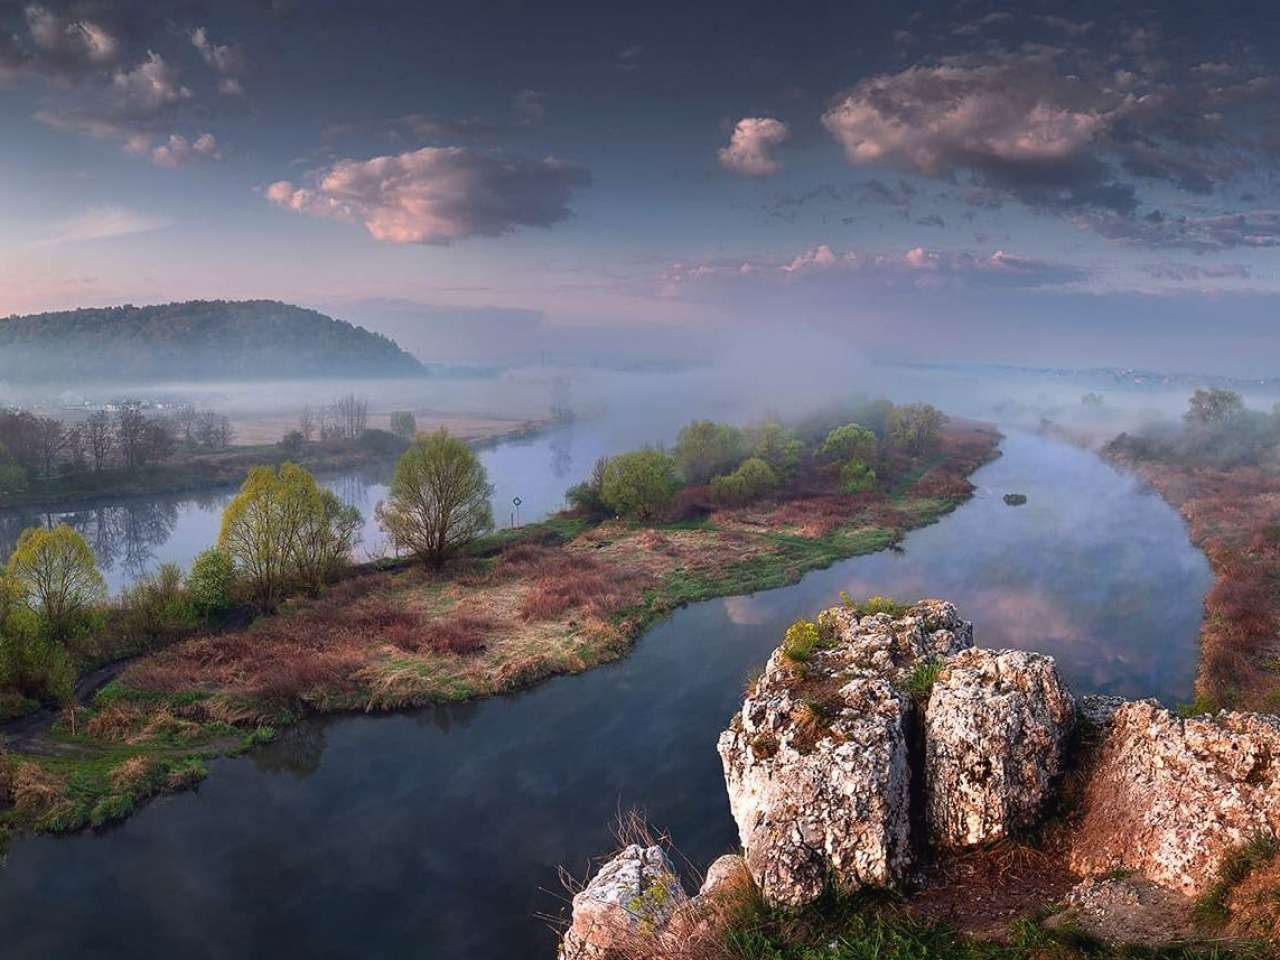 ポーランド - ヴィスワ川の霧深い土地、素敵な場所 ジグソーパズルオンライン